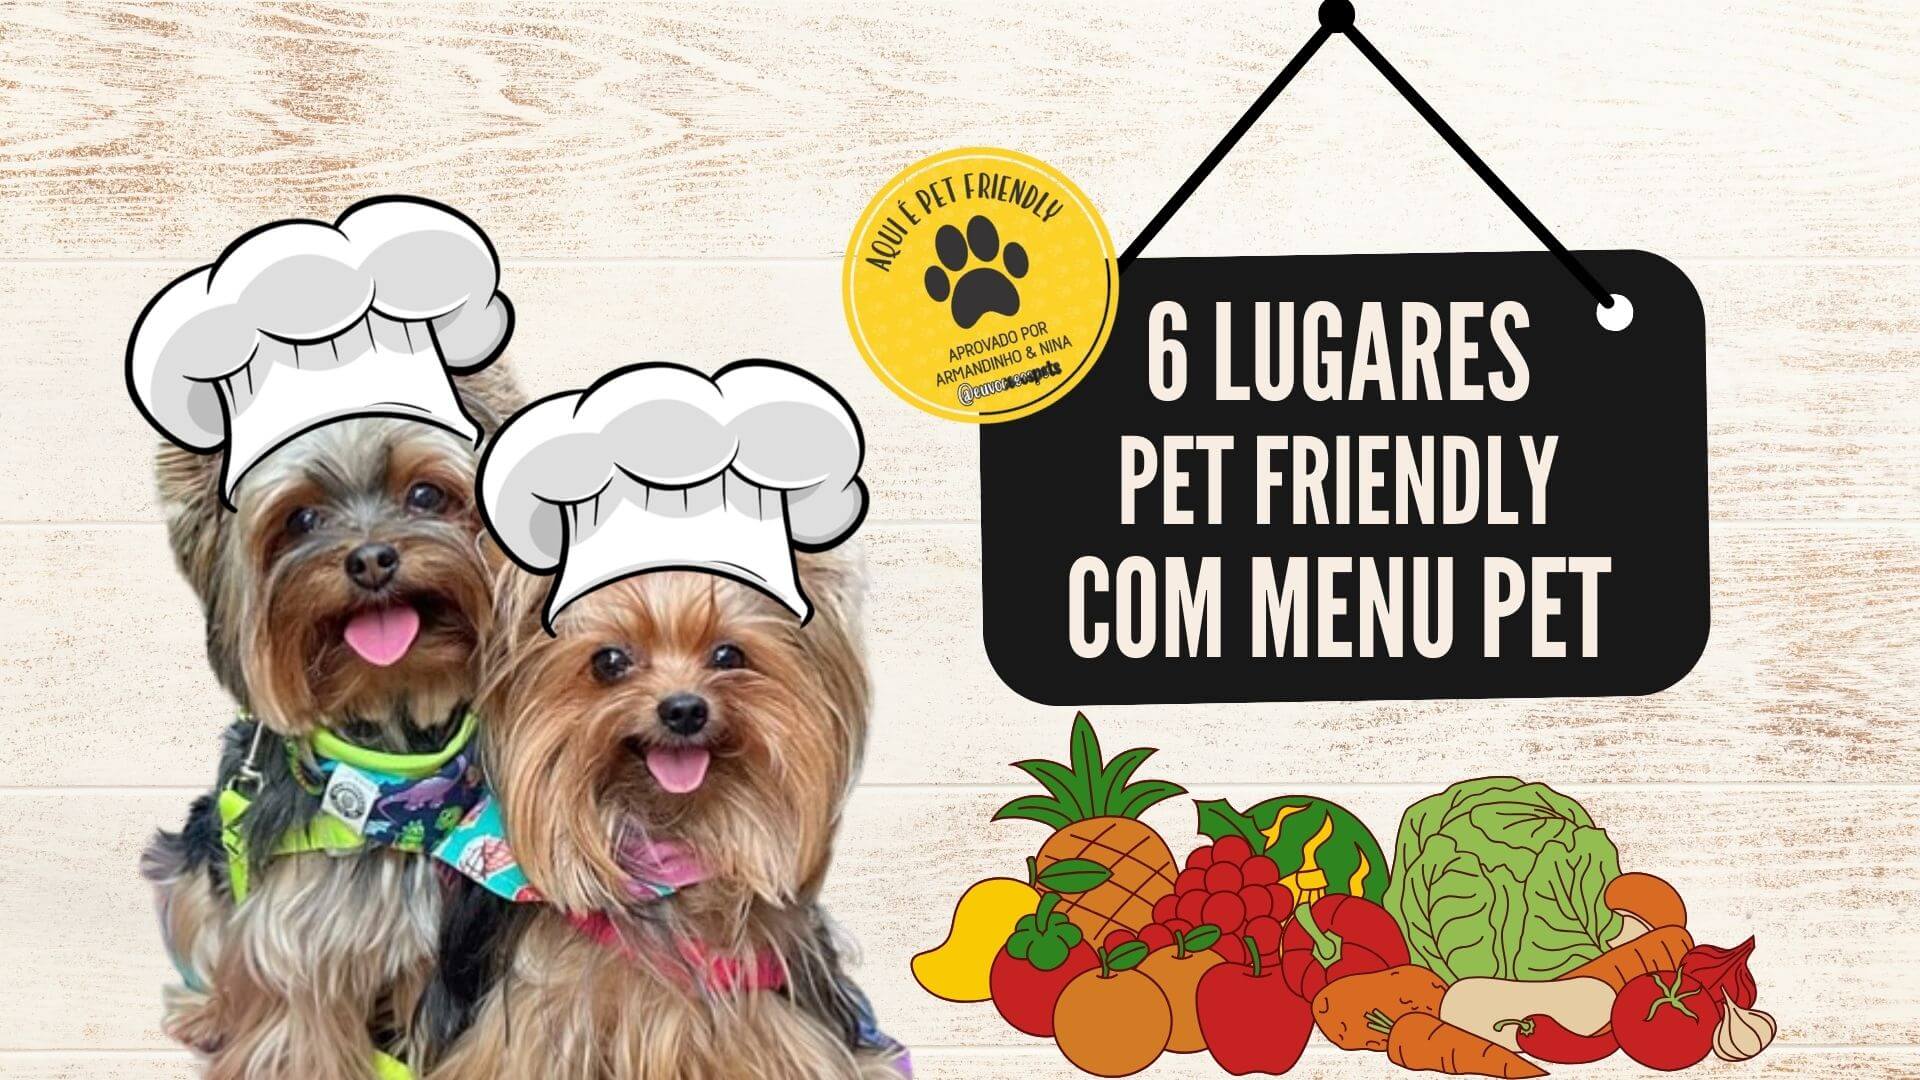 Conheça 6 lugares pet friendly com menu pet - Eu, Você e os Pets